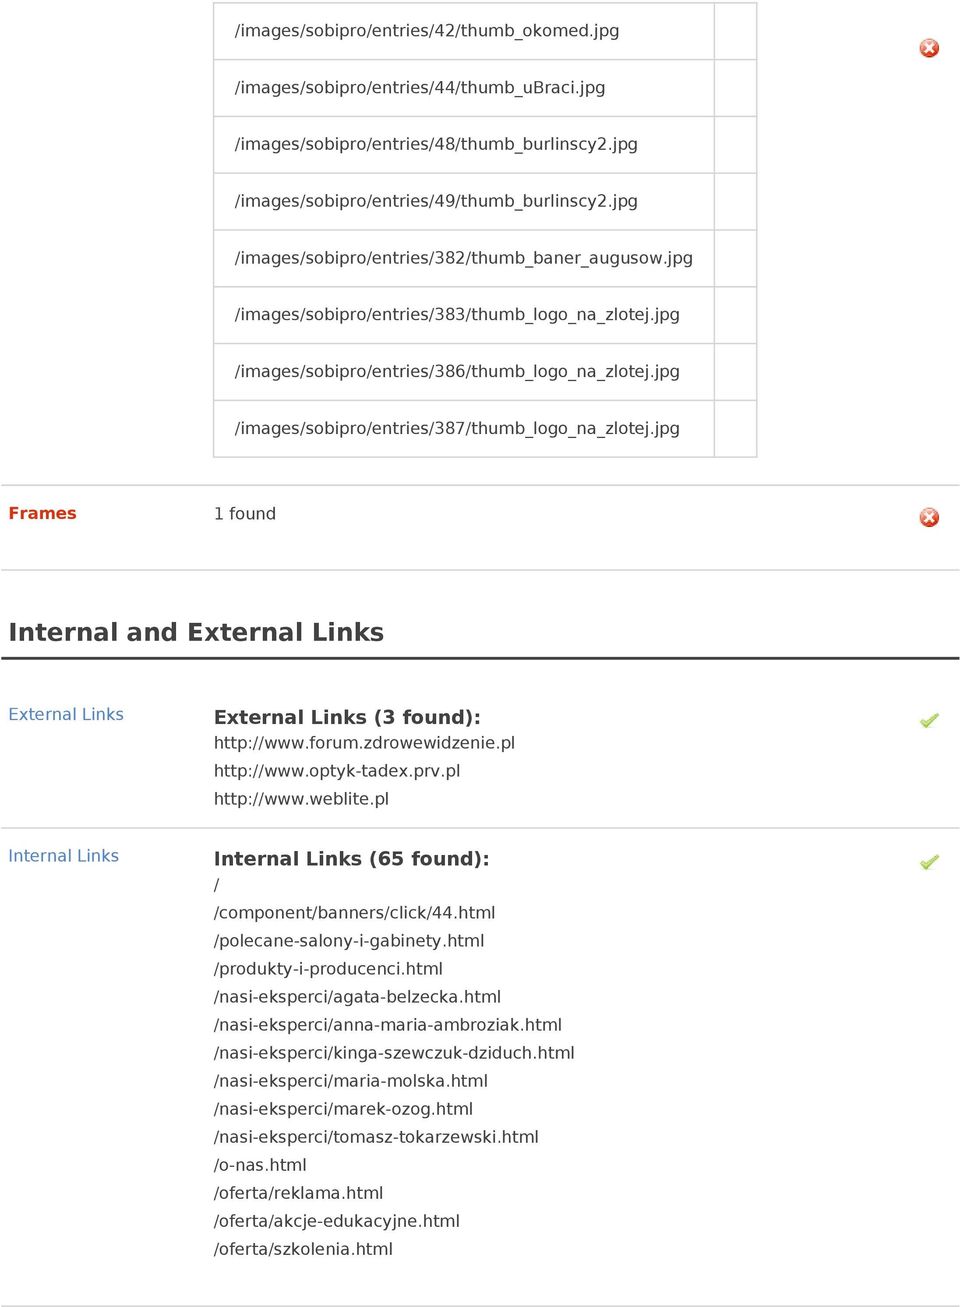 jpg /images/sobipro/entries/387/thumb_logo_na_zlotej.jpg Frames 1 found Internal and External Links External Links External Links (3 found): http://www.forum.zdrowewidzenie.pl http://www.optyk-tadex.